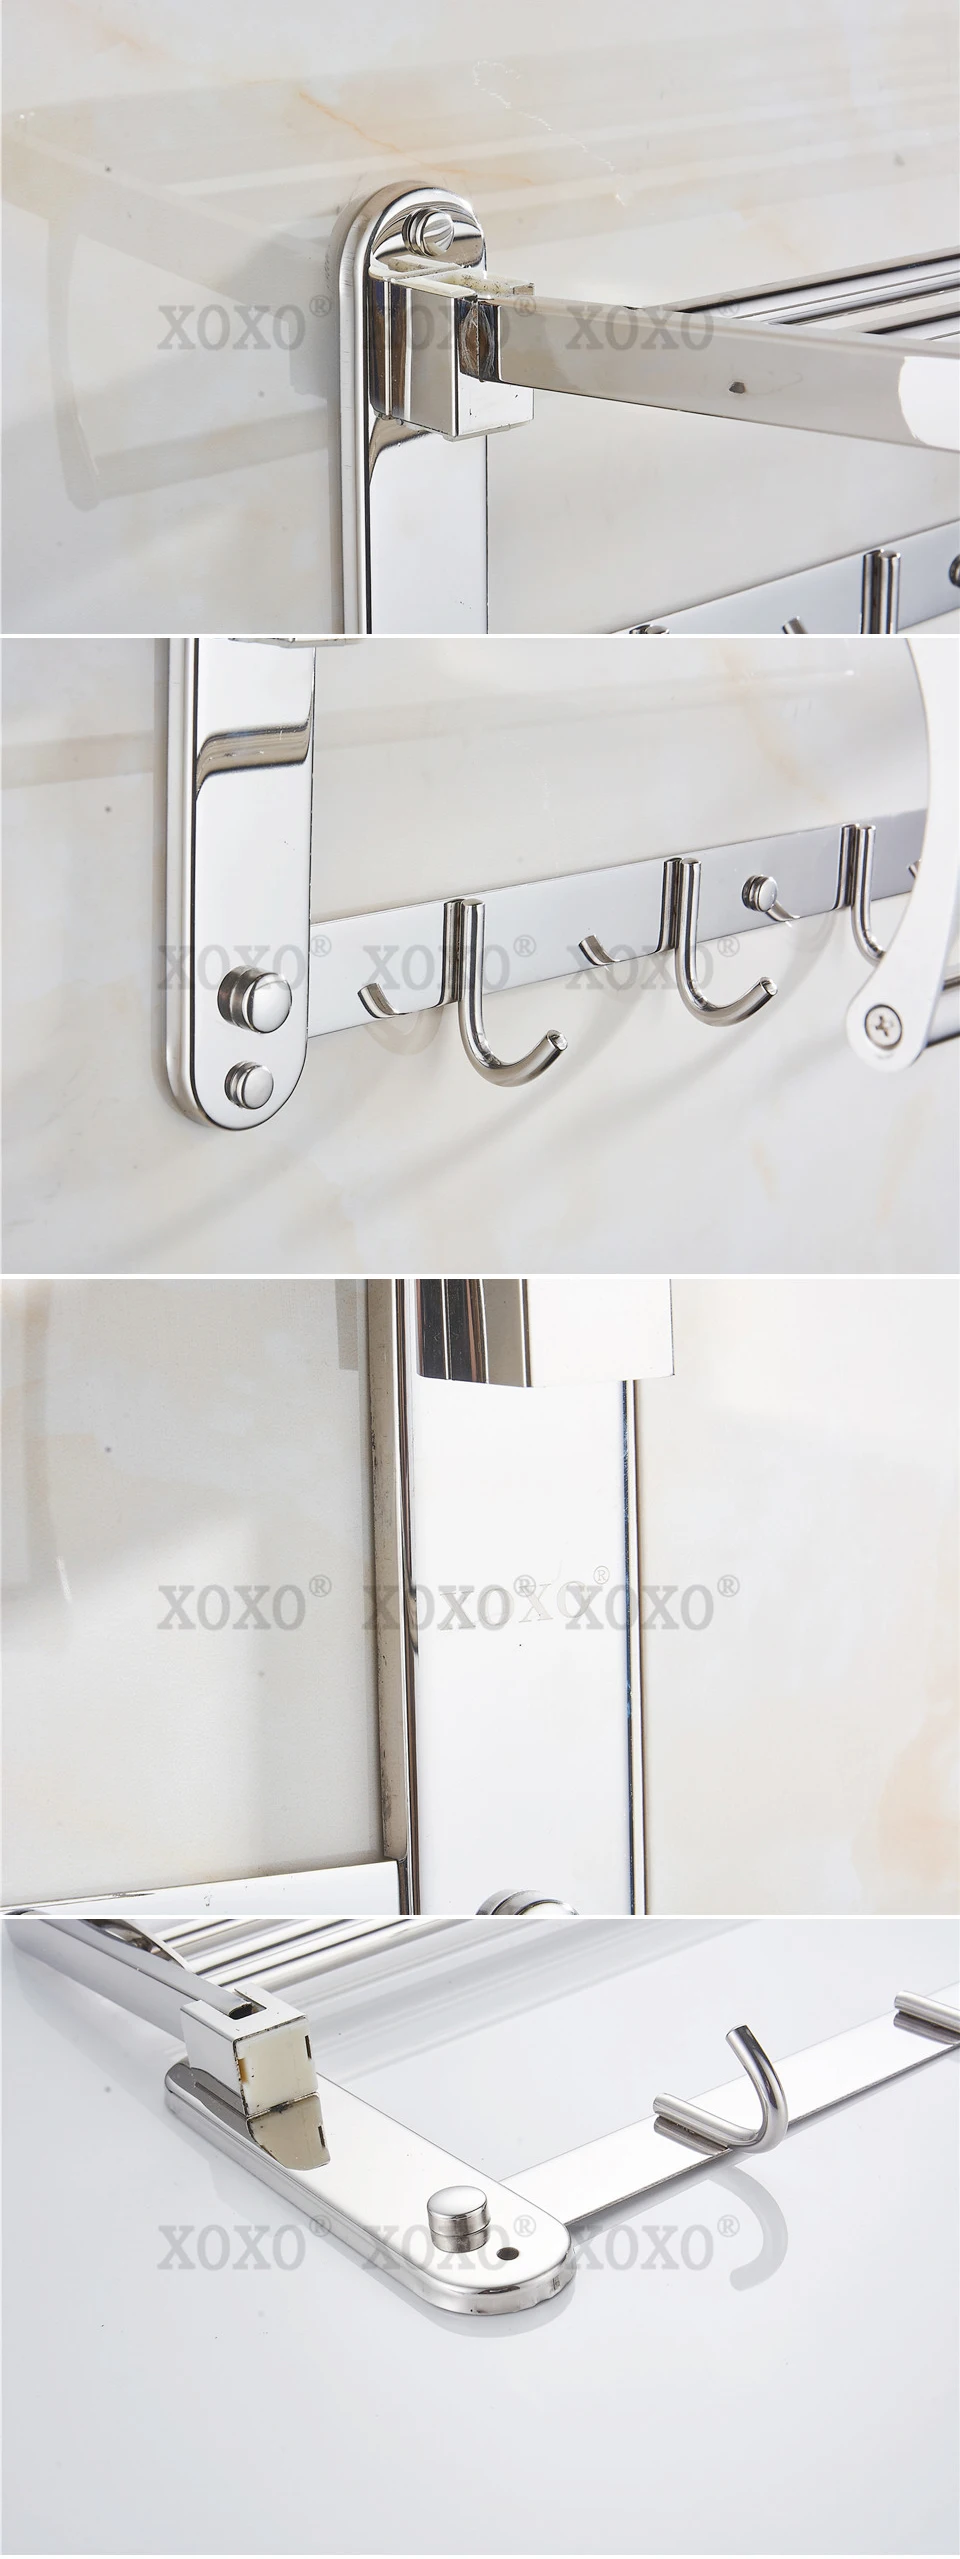 XOXO продукт настенная установка складной 304 из нержавеющей стали аксессуары для ванной комнаты, вешалка для полотенец 1068